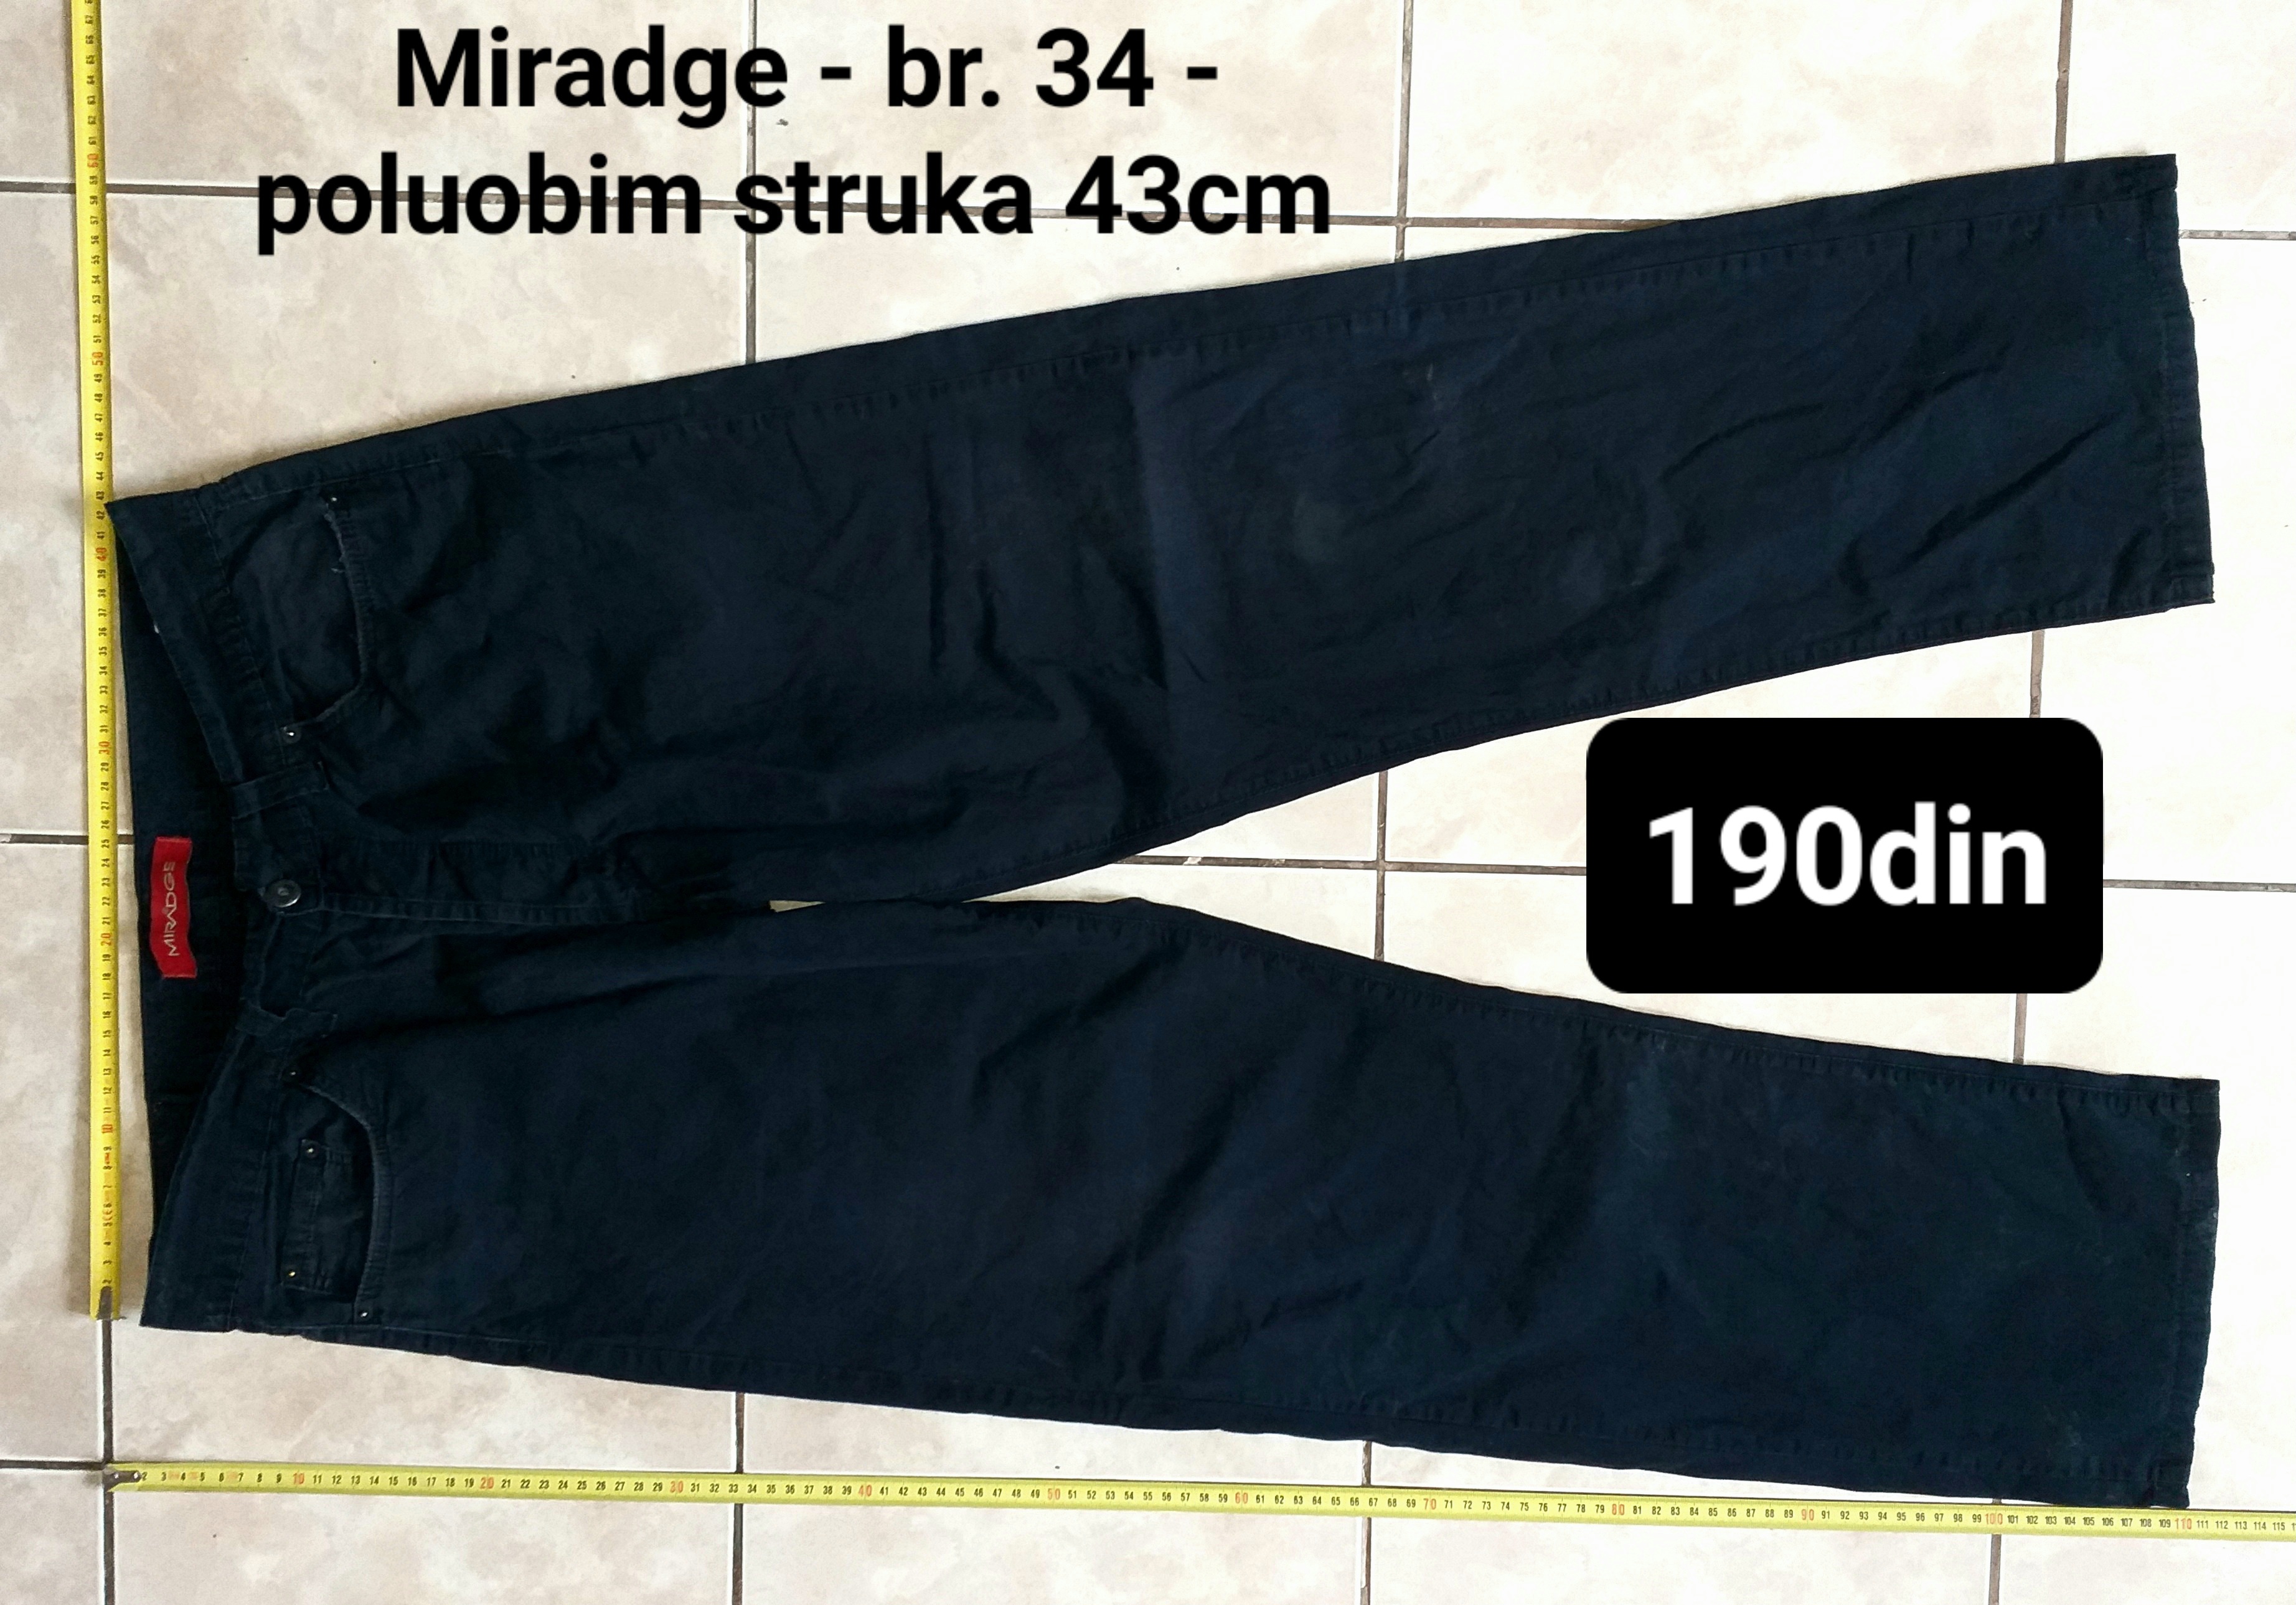 Miradge muške pantalone br. 34 - poluobim struka 43cm